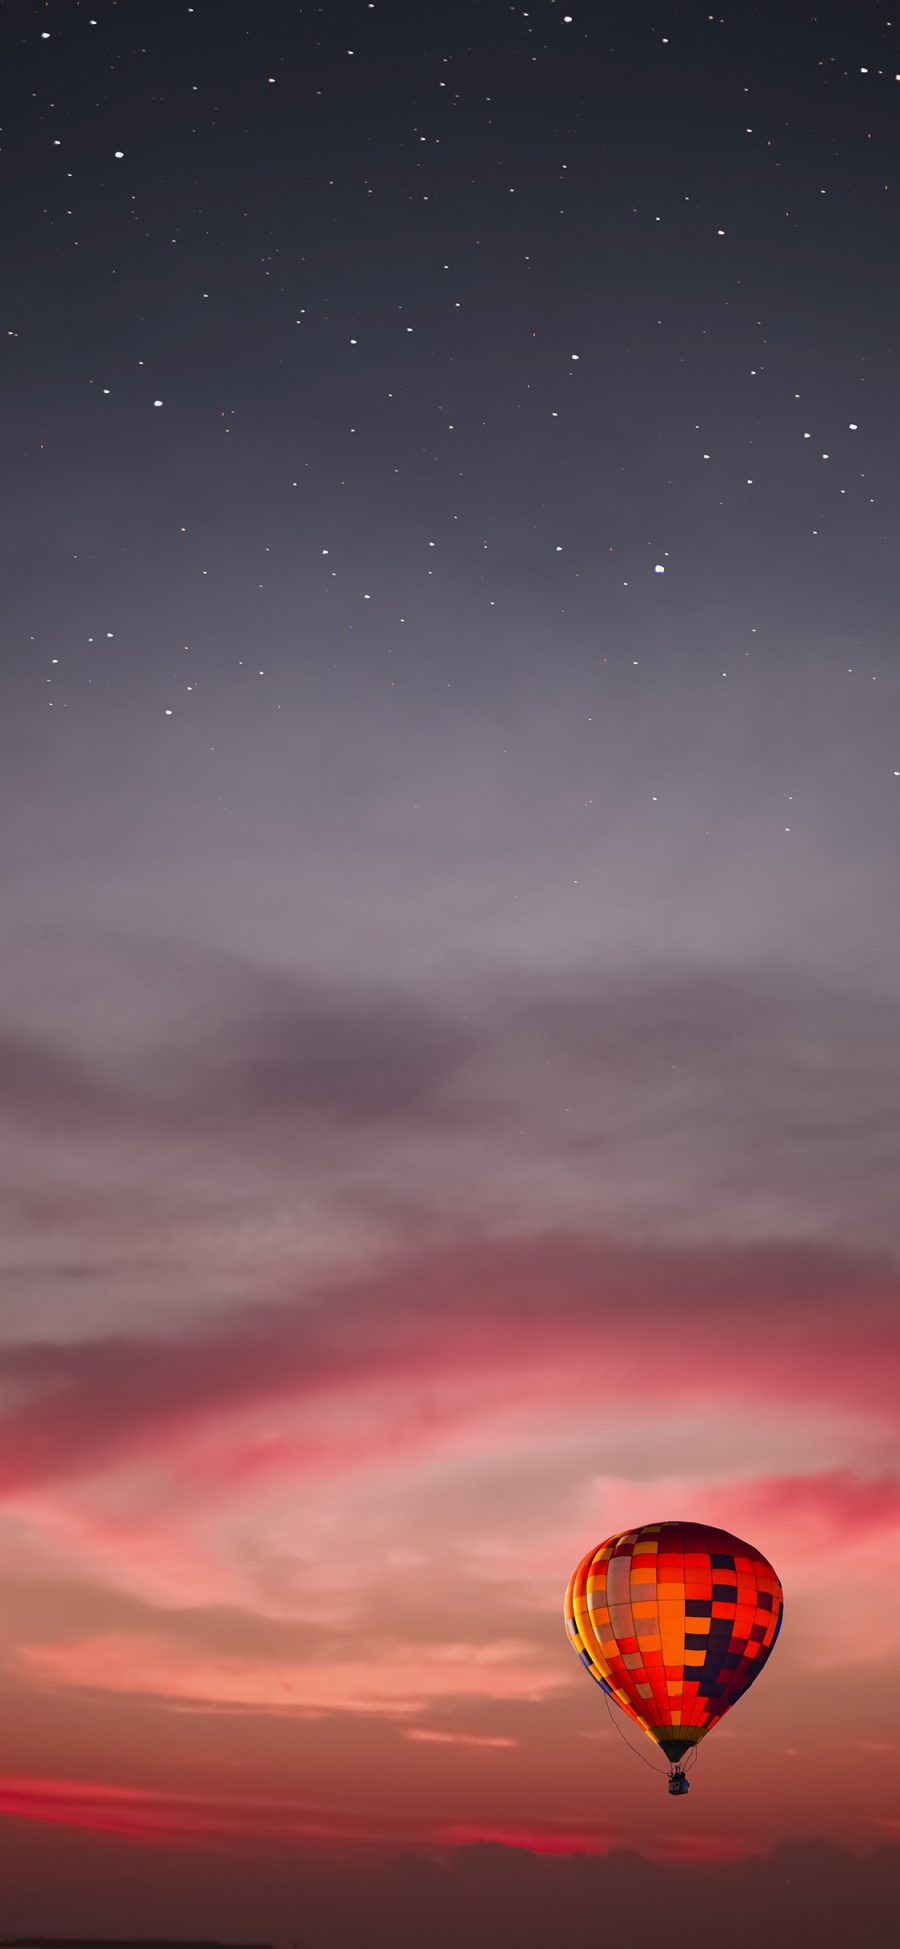 [2436×1125]就是 黄昏 热气球 云彩 星星 星空 苹果手机壁纸图片